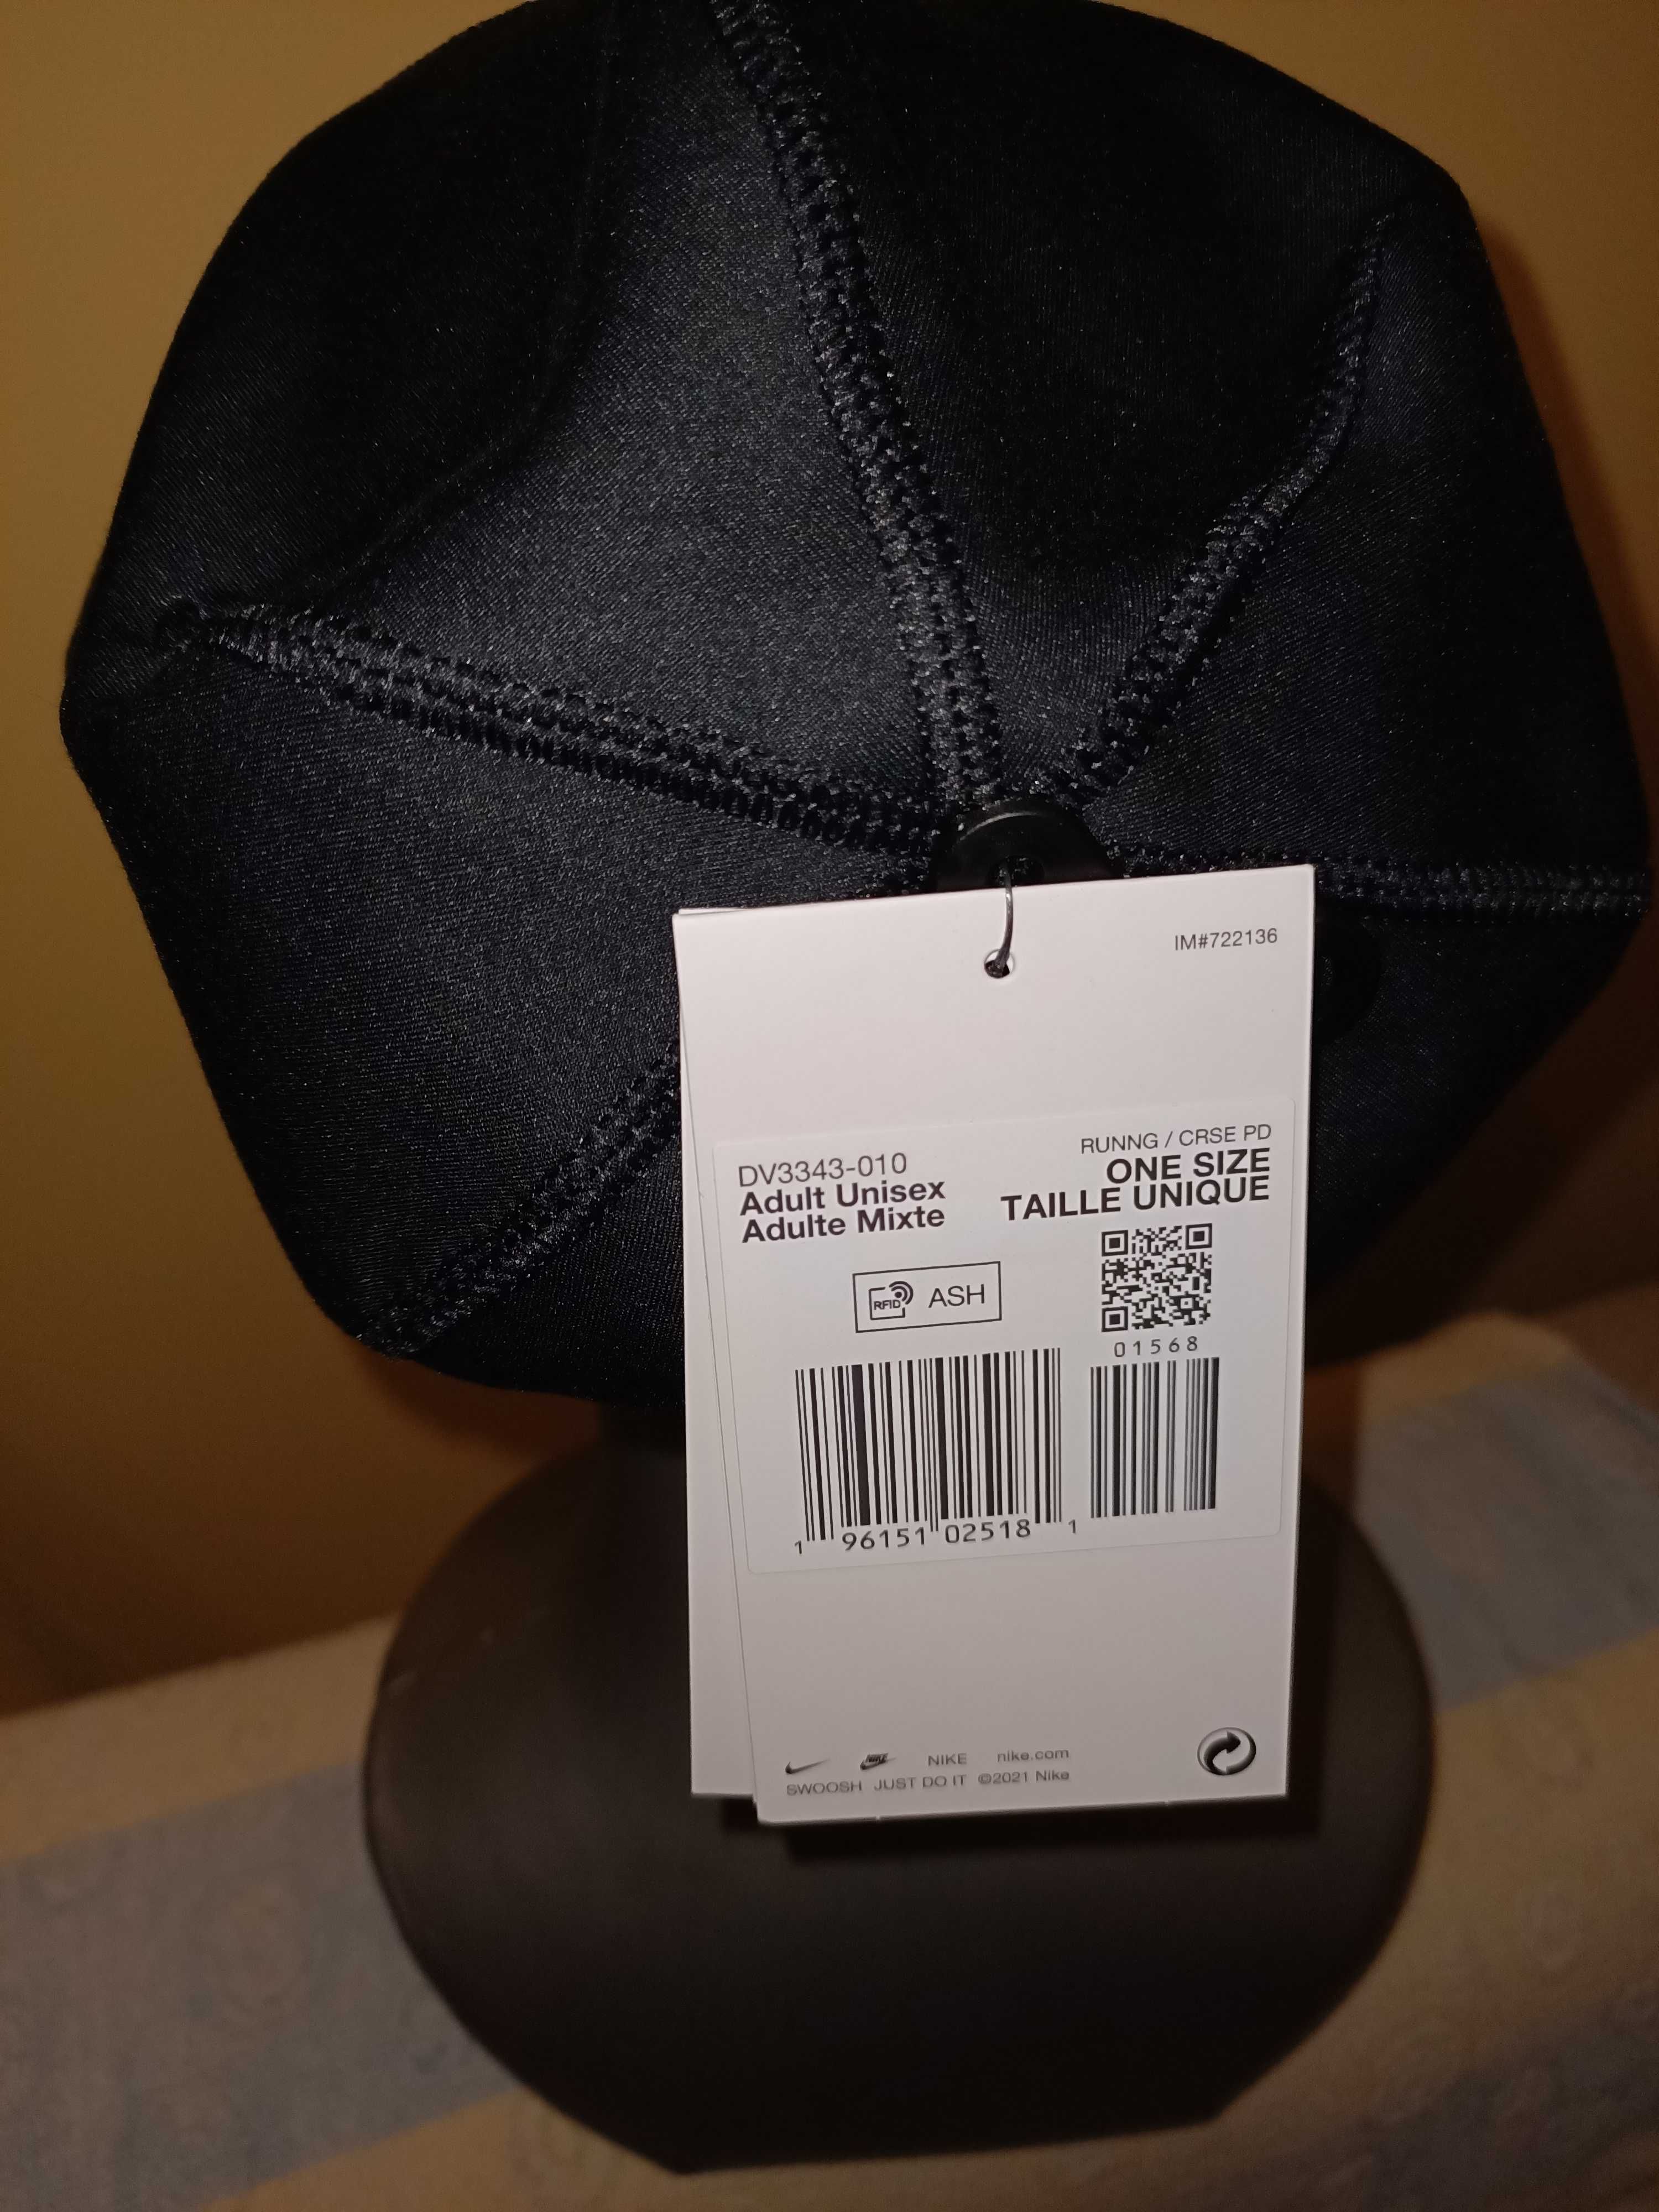 Nike Beanie Performance czapka unisex damka męska czarna nowa